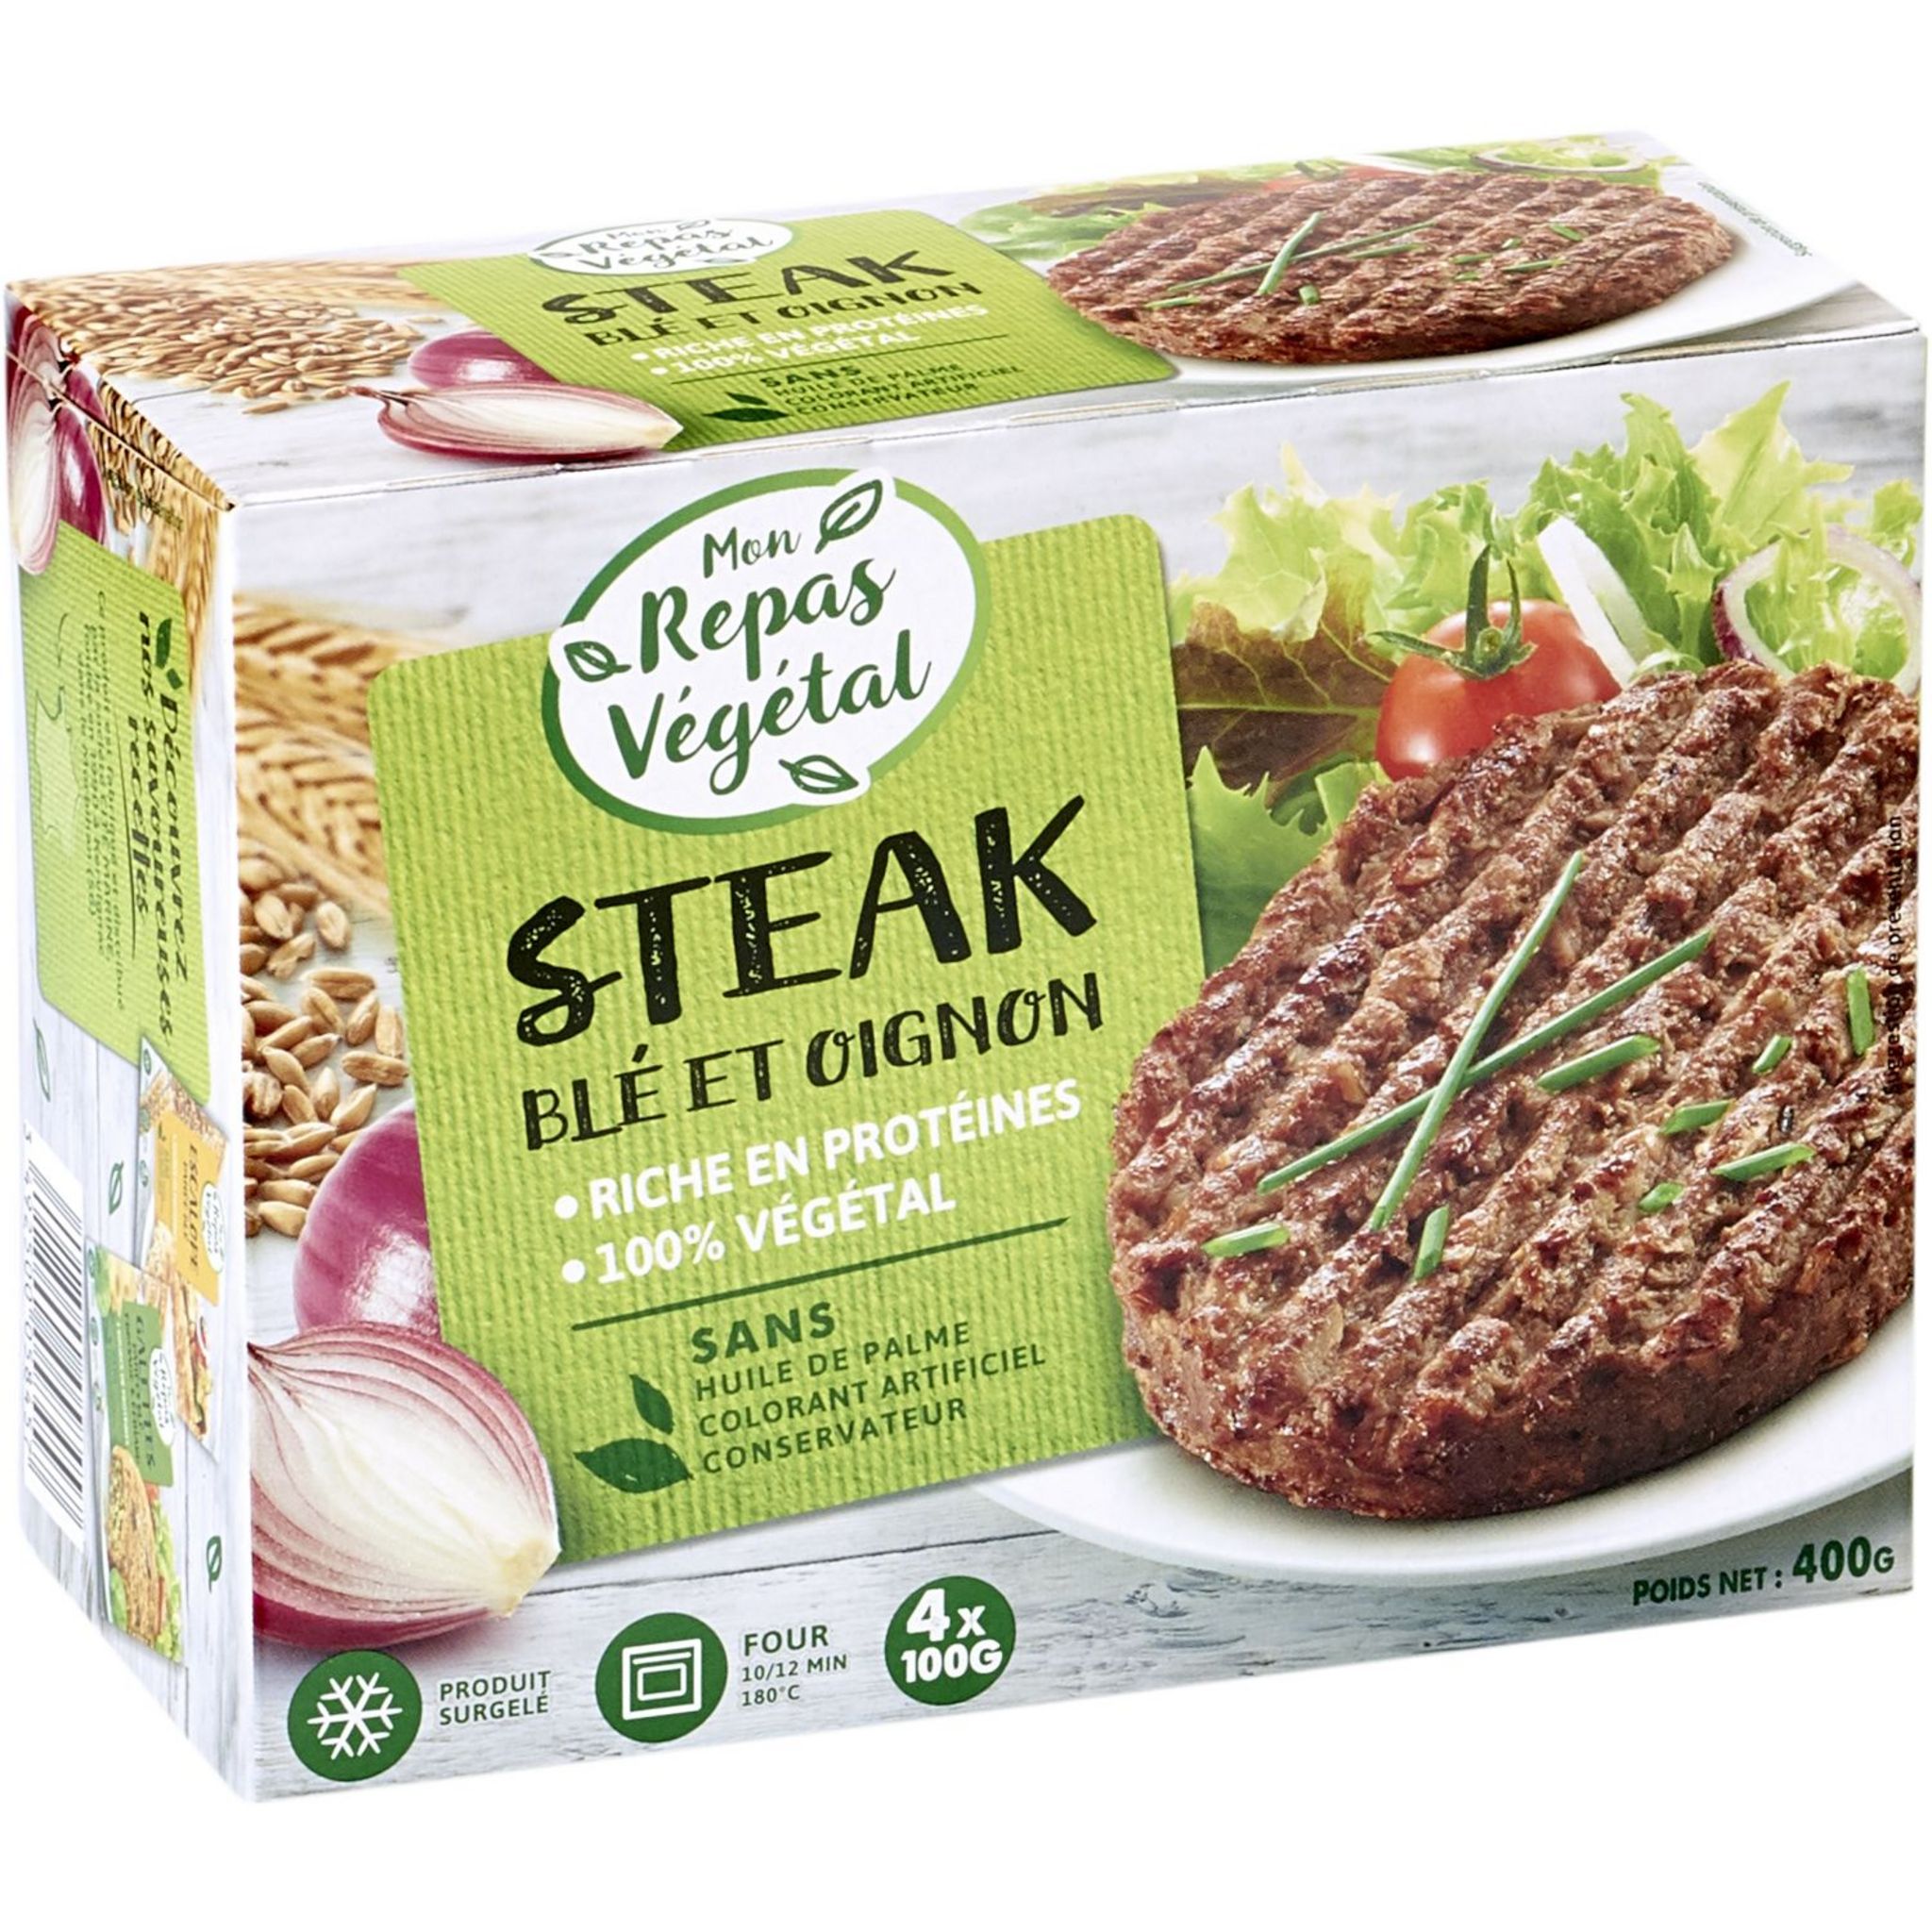 Steak végétal aux céréales et légumes- nessma cuisine